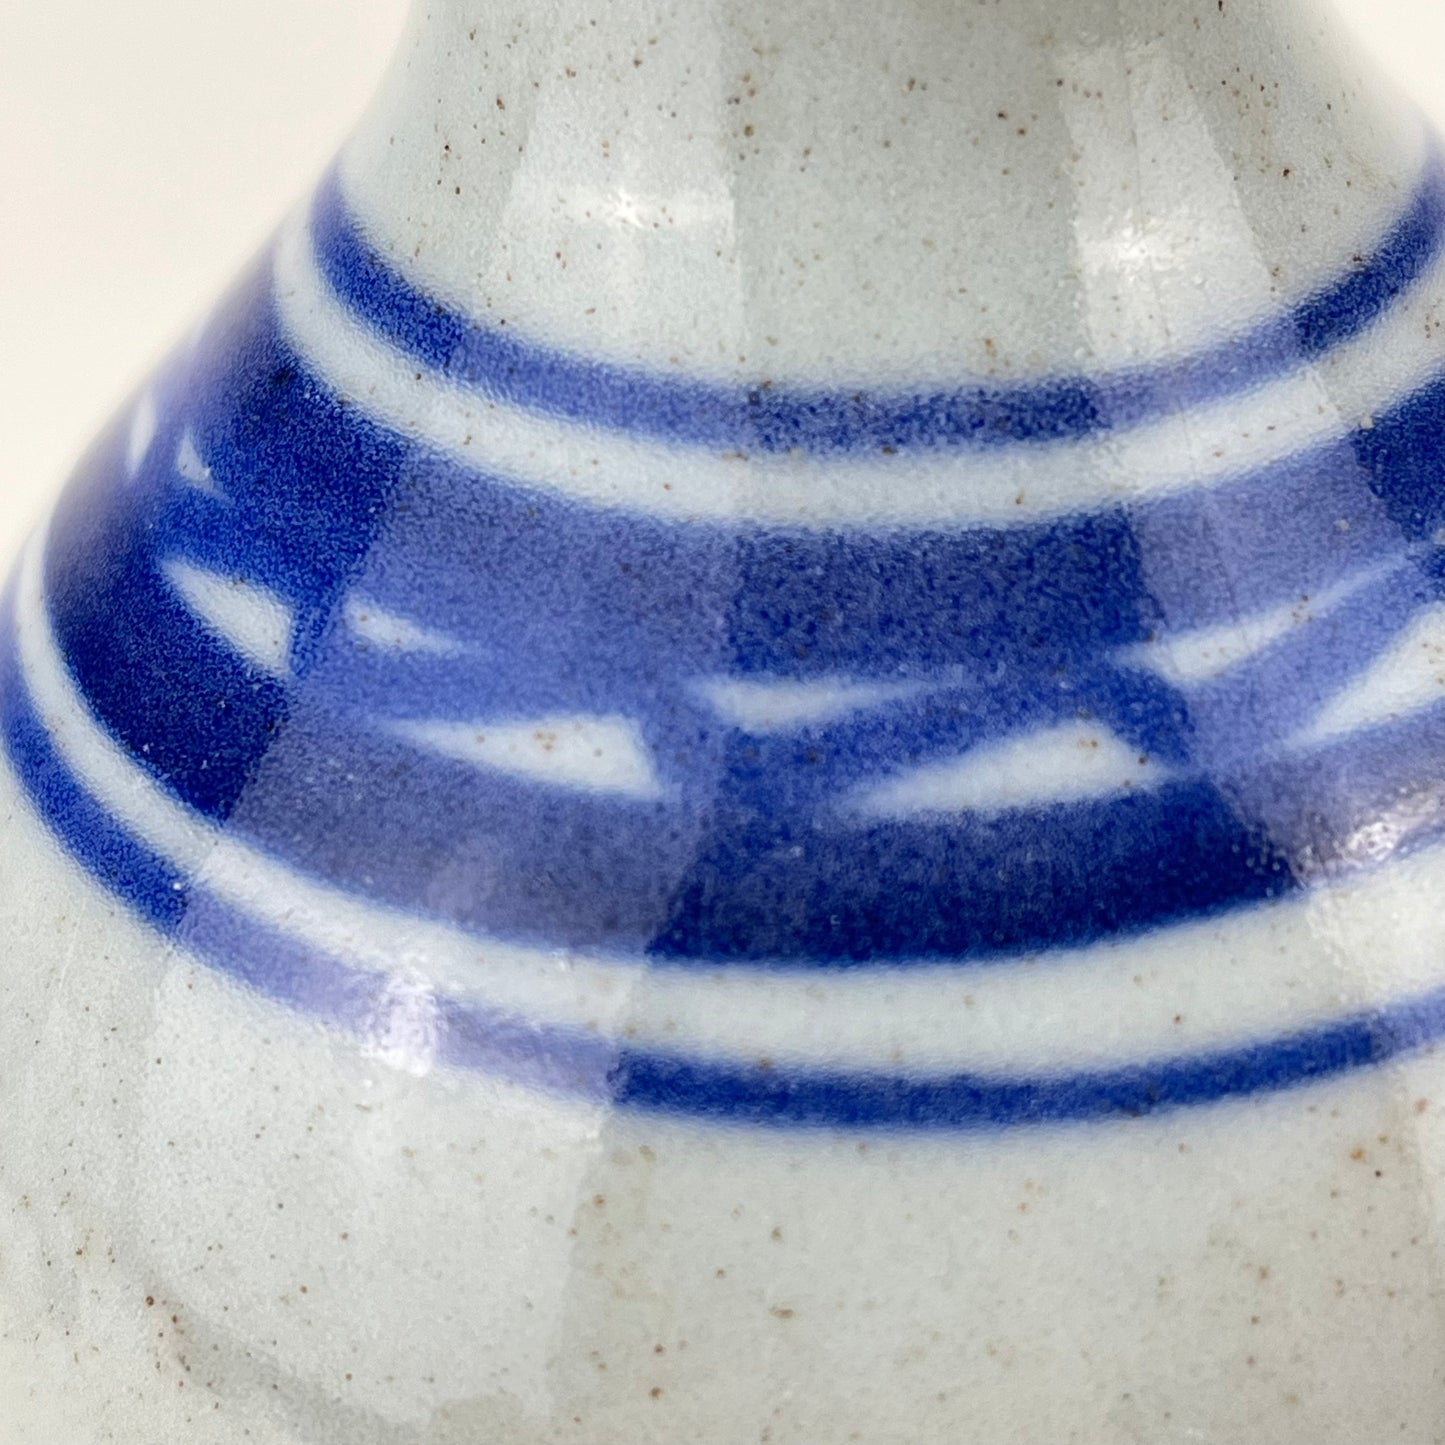 Antique Japanese Late Edo Era Ceramic Tokkuri Sake Bottle 9” (damaged)